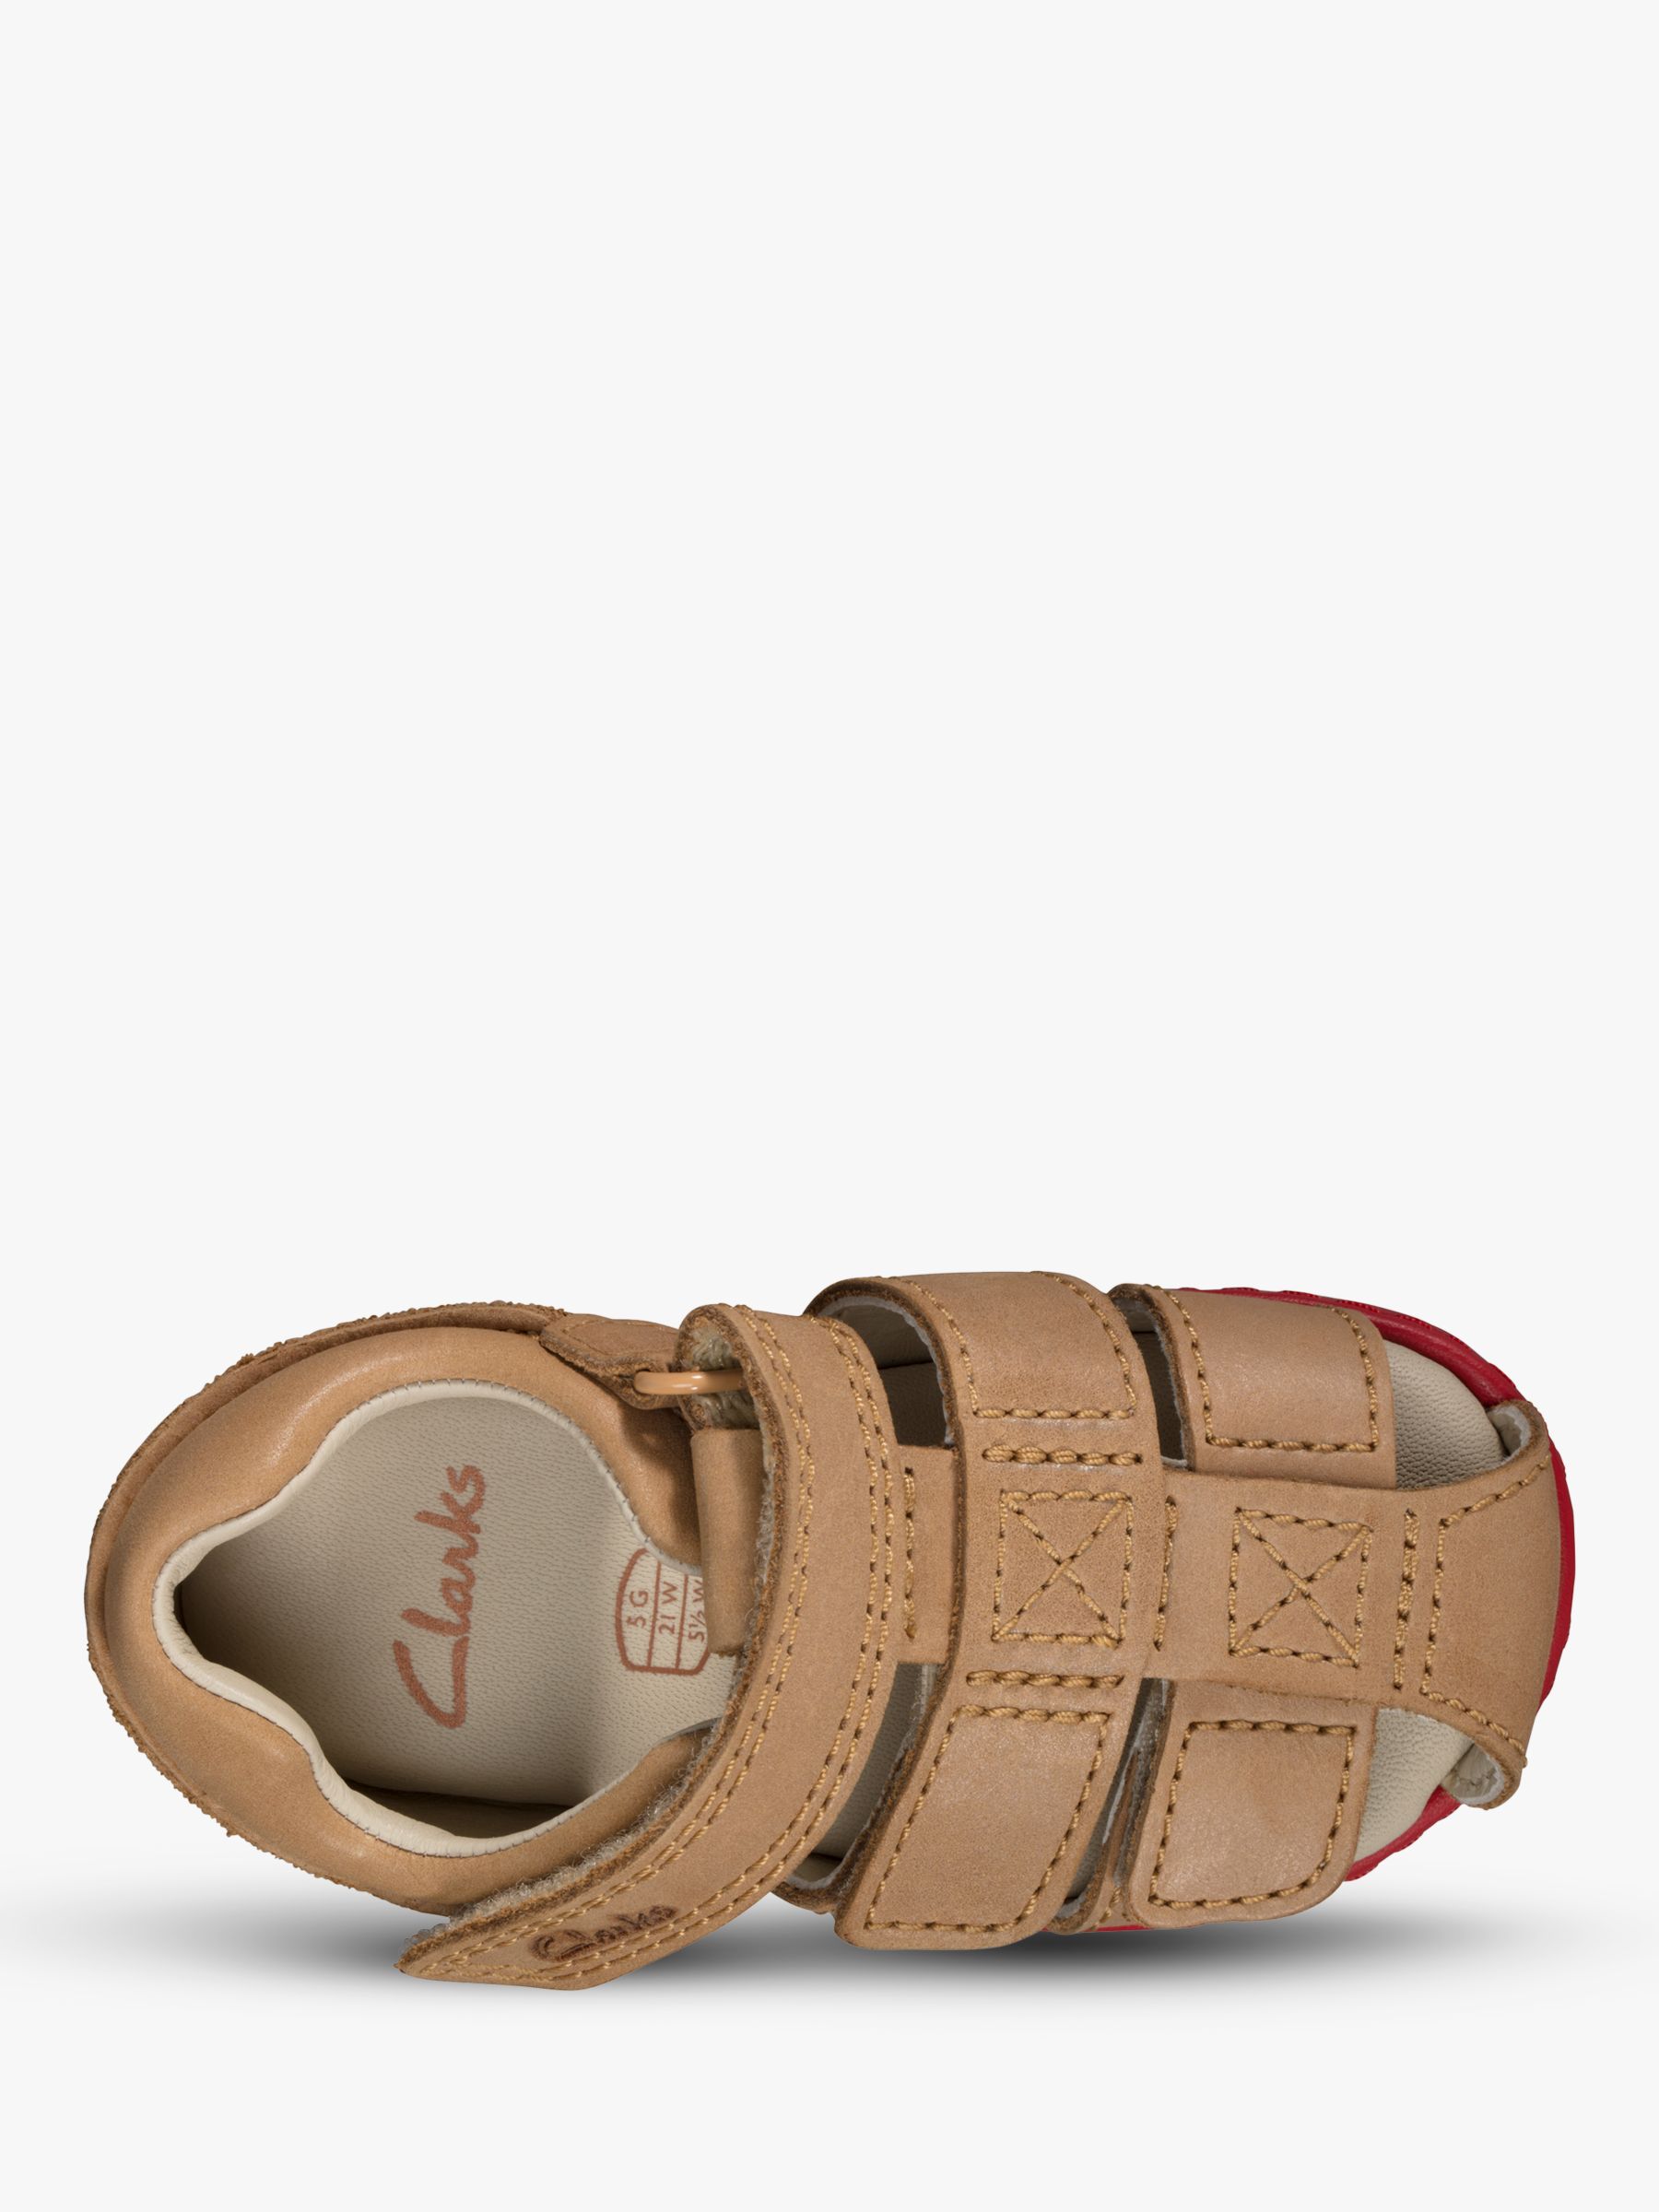 clarks toddler sandals sale